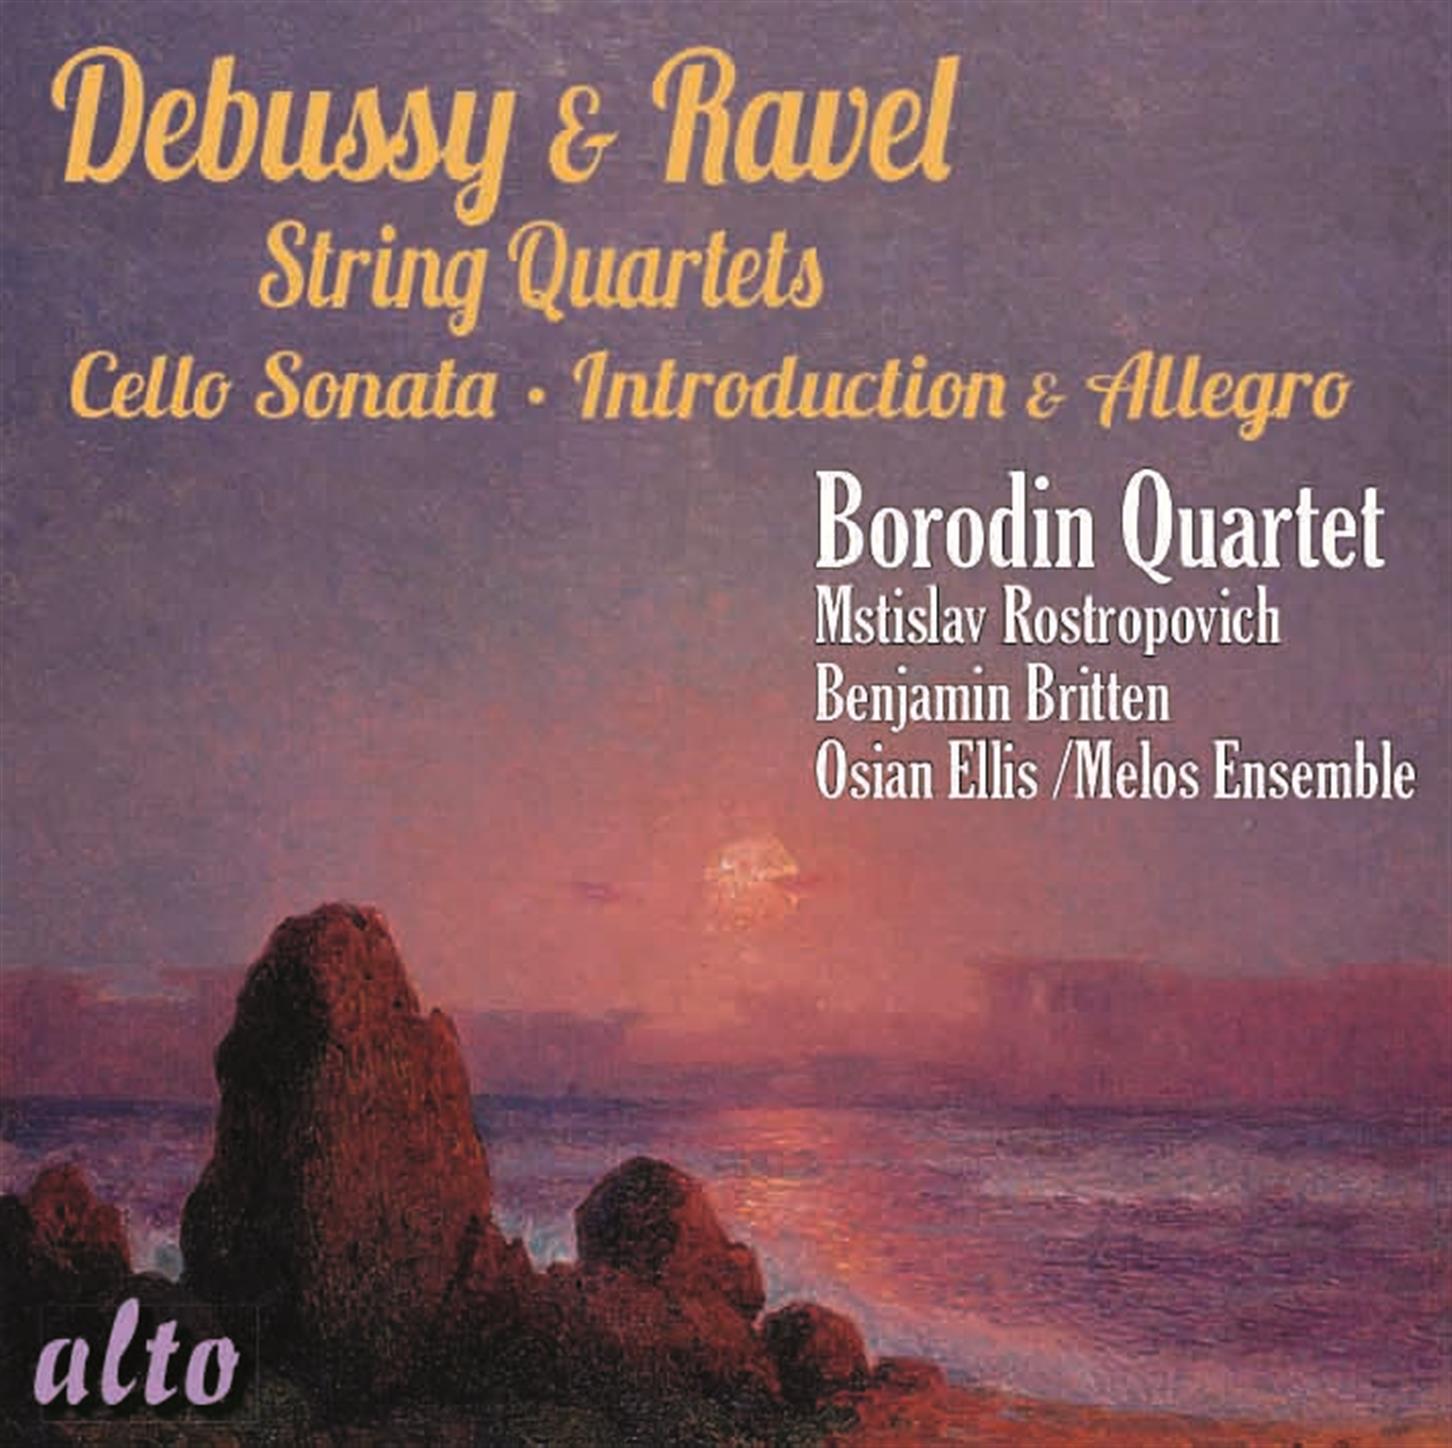 String Quartet in F Major: I. Allegro moderato  tre s doux